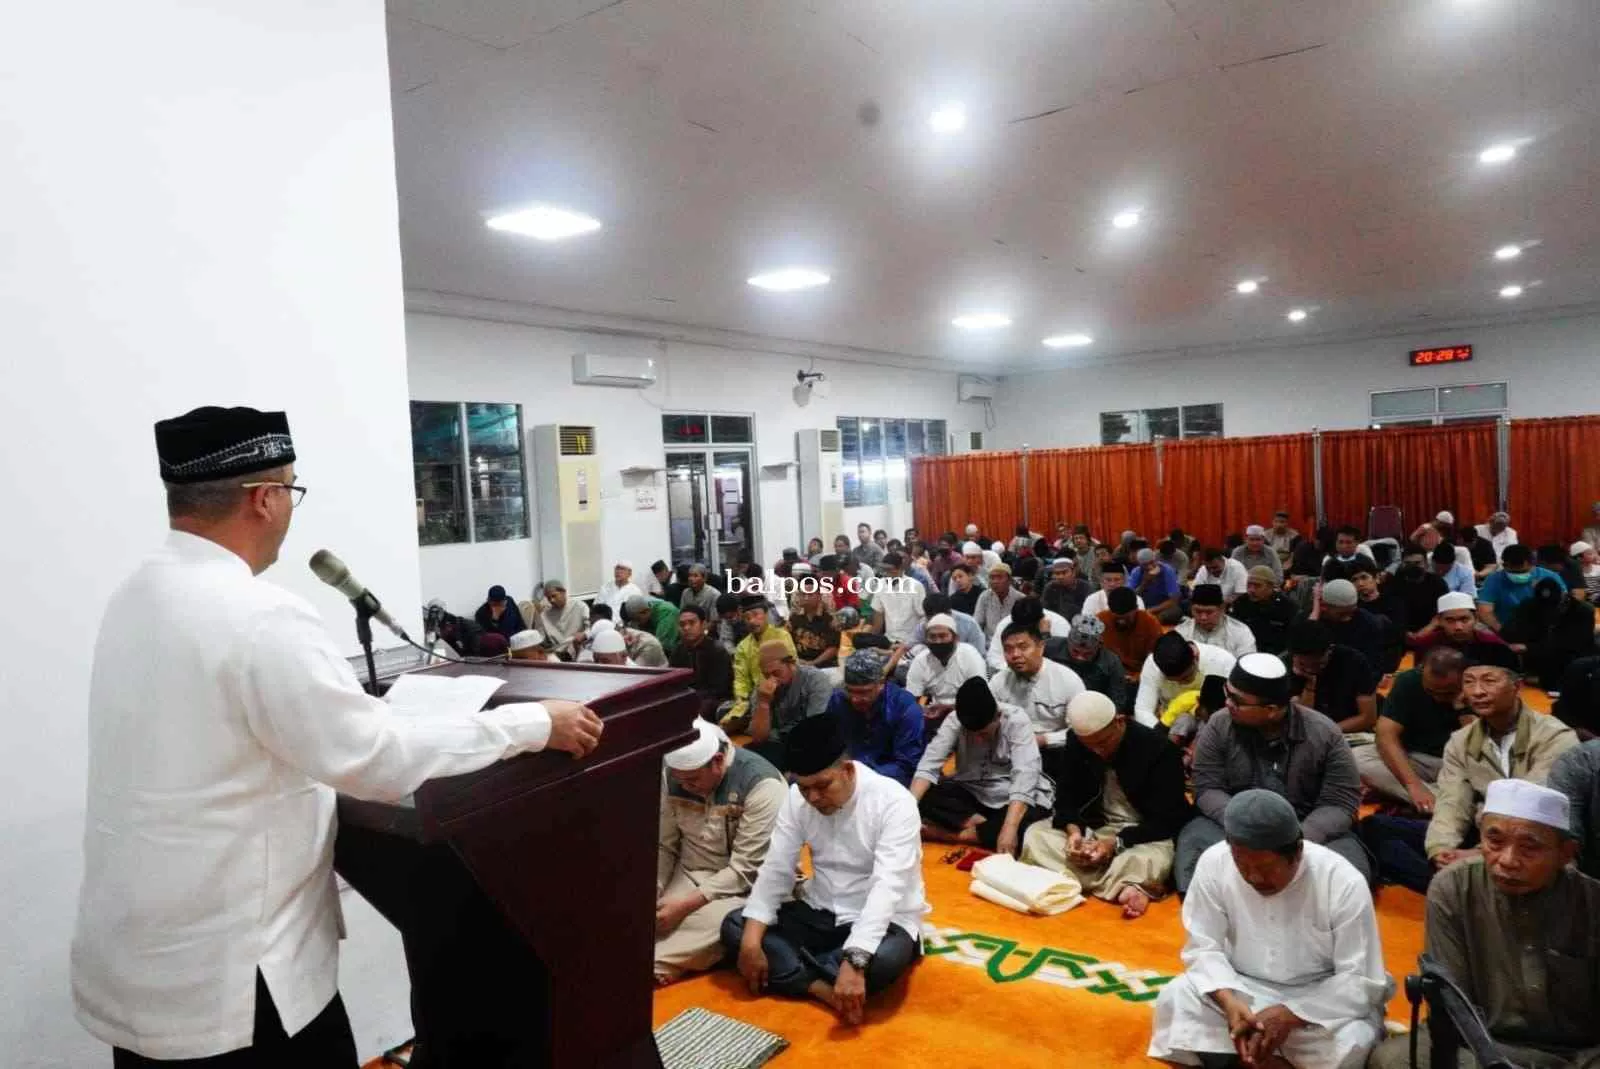 SAFARI:Pembukaan kegiatan safari Ramadan yang digelar KPI Unit Balikpapan di masjid Istiqomah. (Oky Balpos)